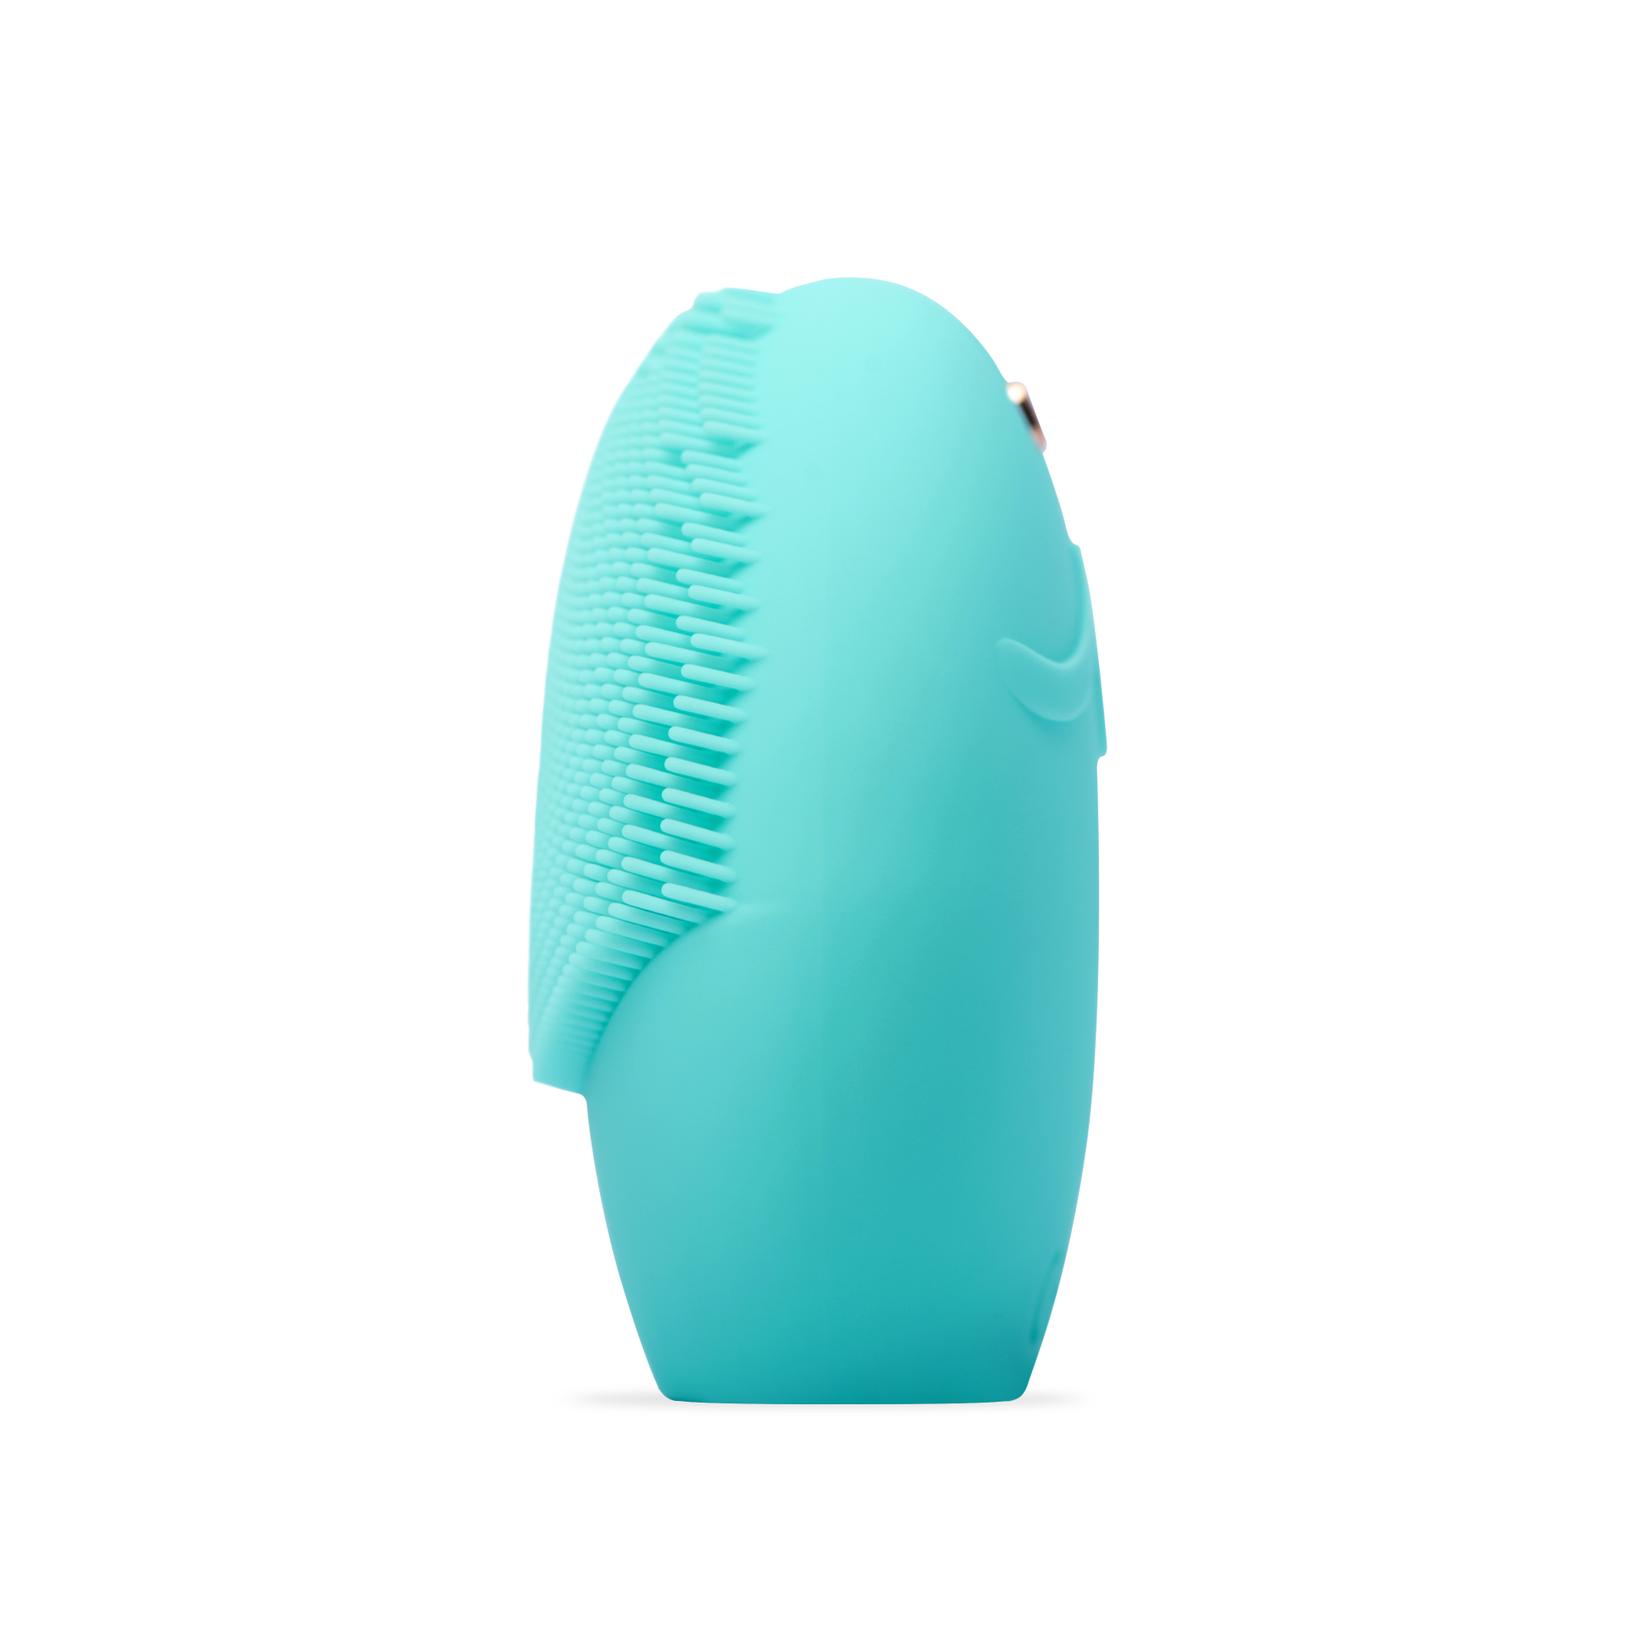 Selected image for FOREO Pametni uređaj za čišćenje lica sa senzorima za analizu kože LUNA play smart 2 Mint For You